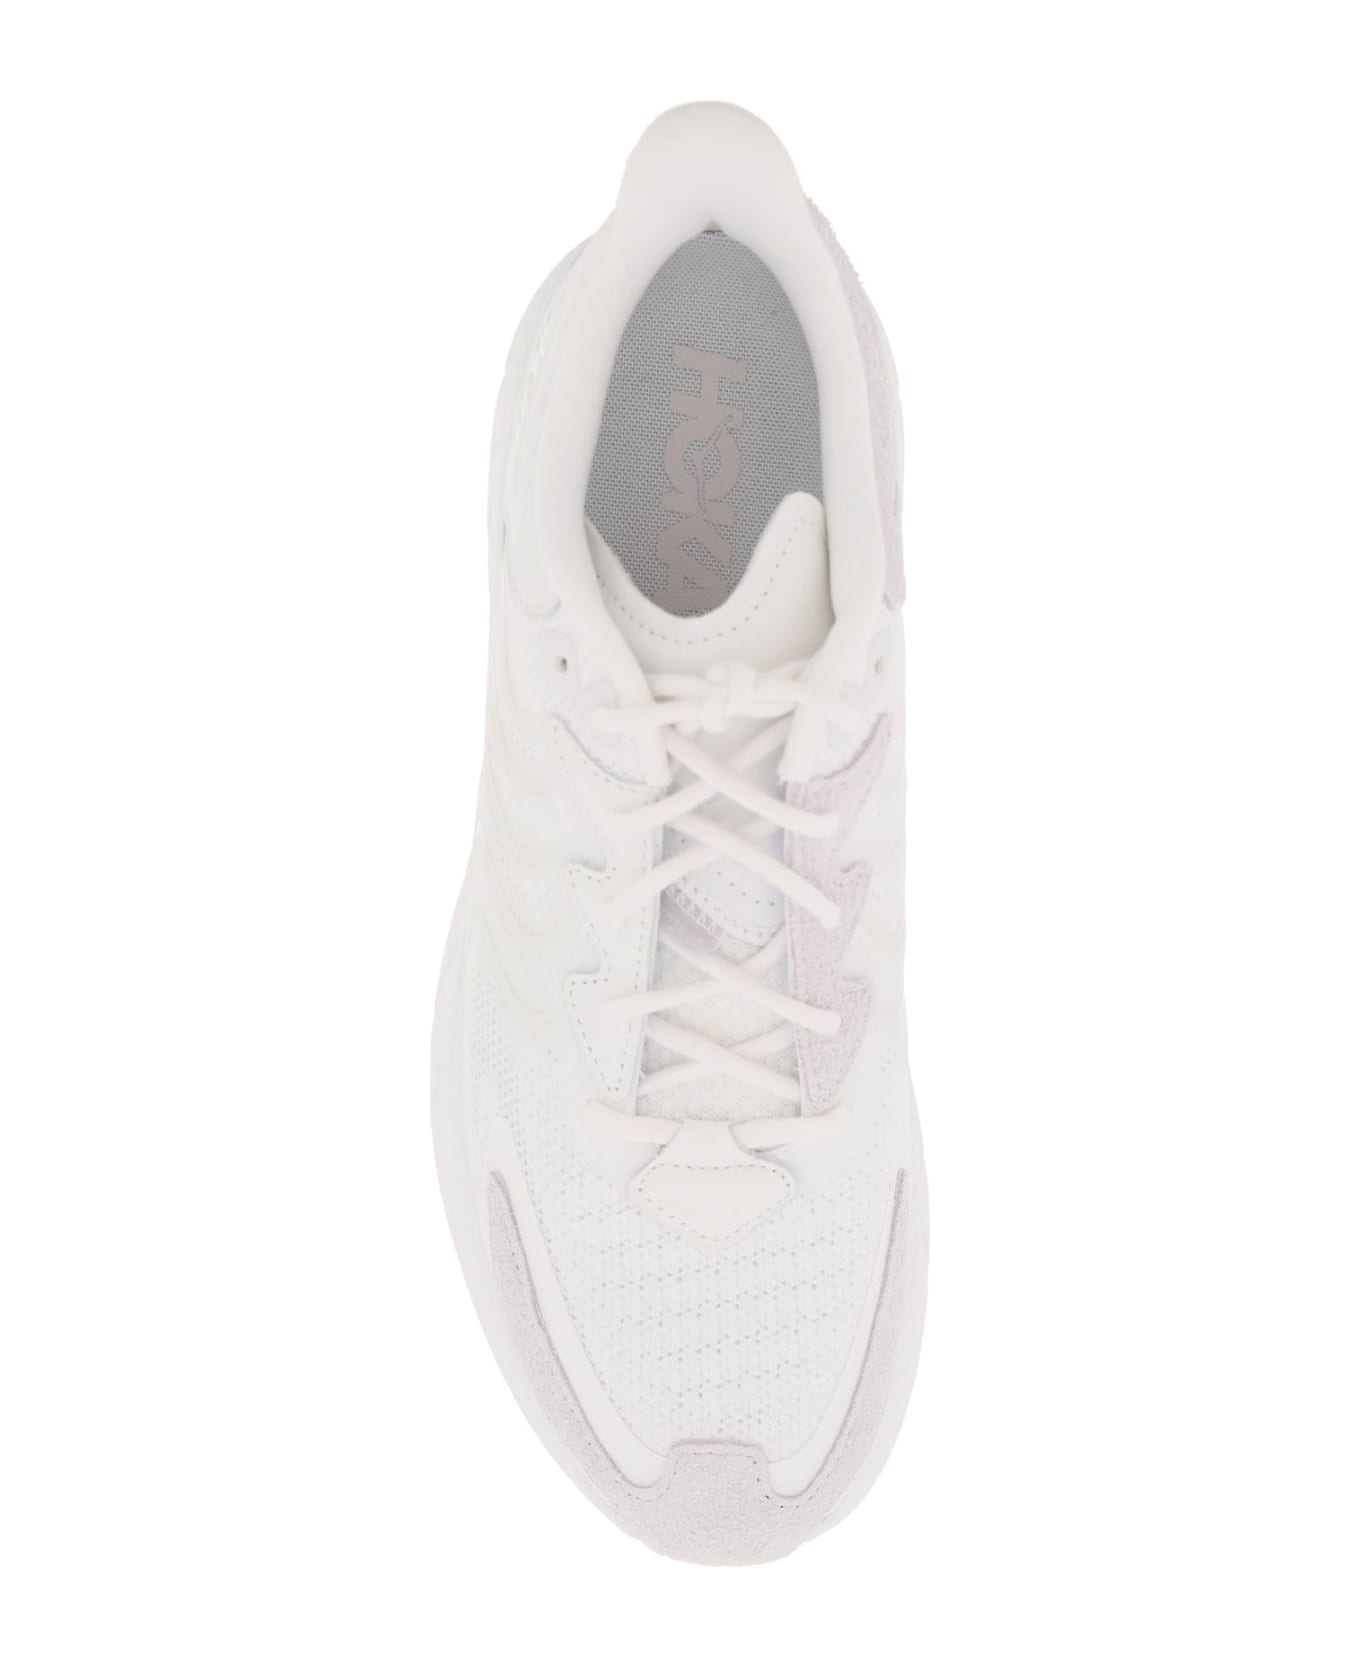 Hoka Clifton Ls Sneakers - WHITE NIMBUS CLOUD (White)